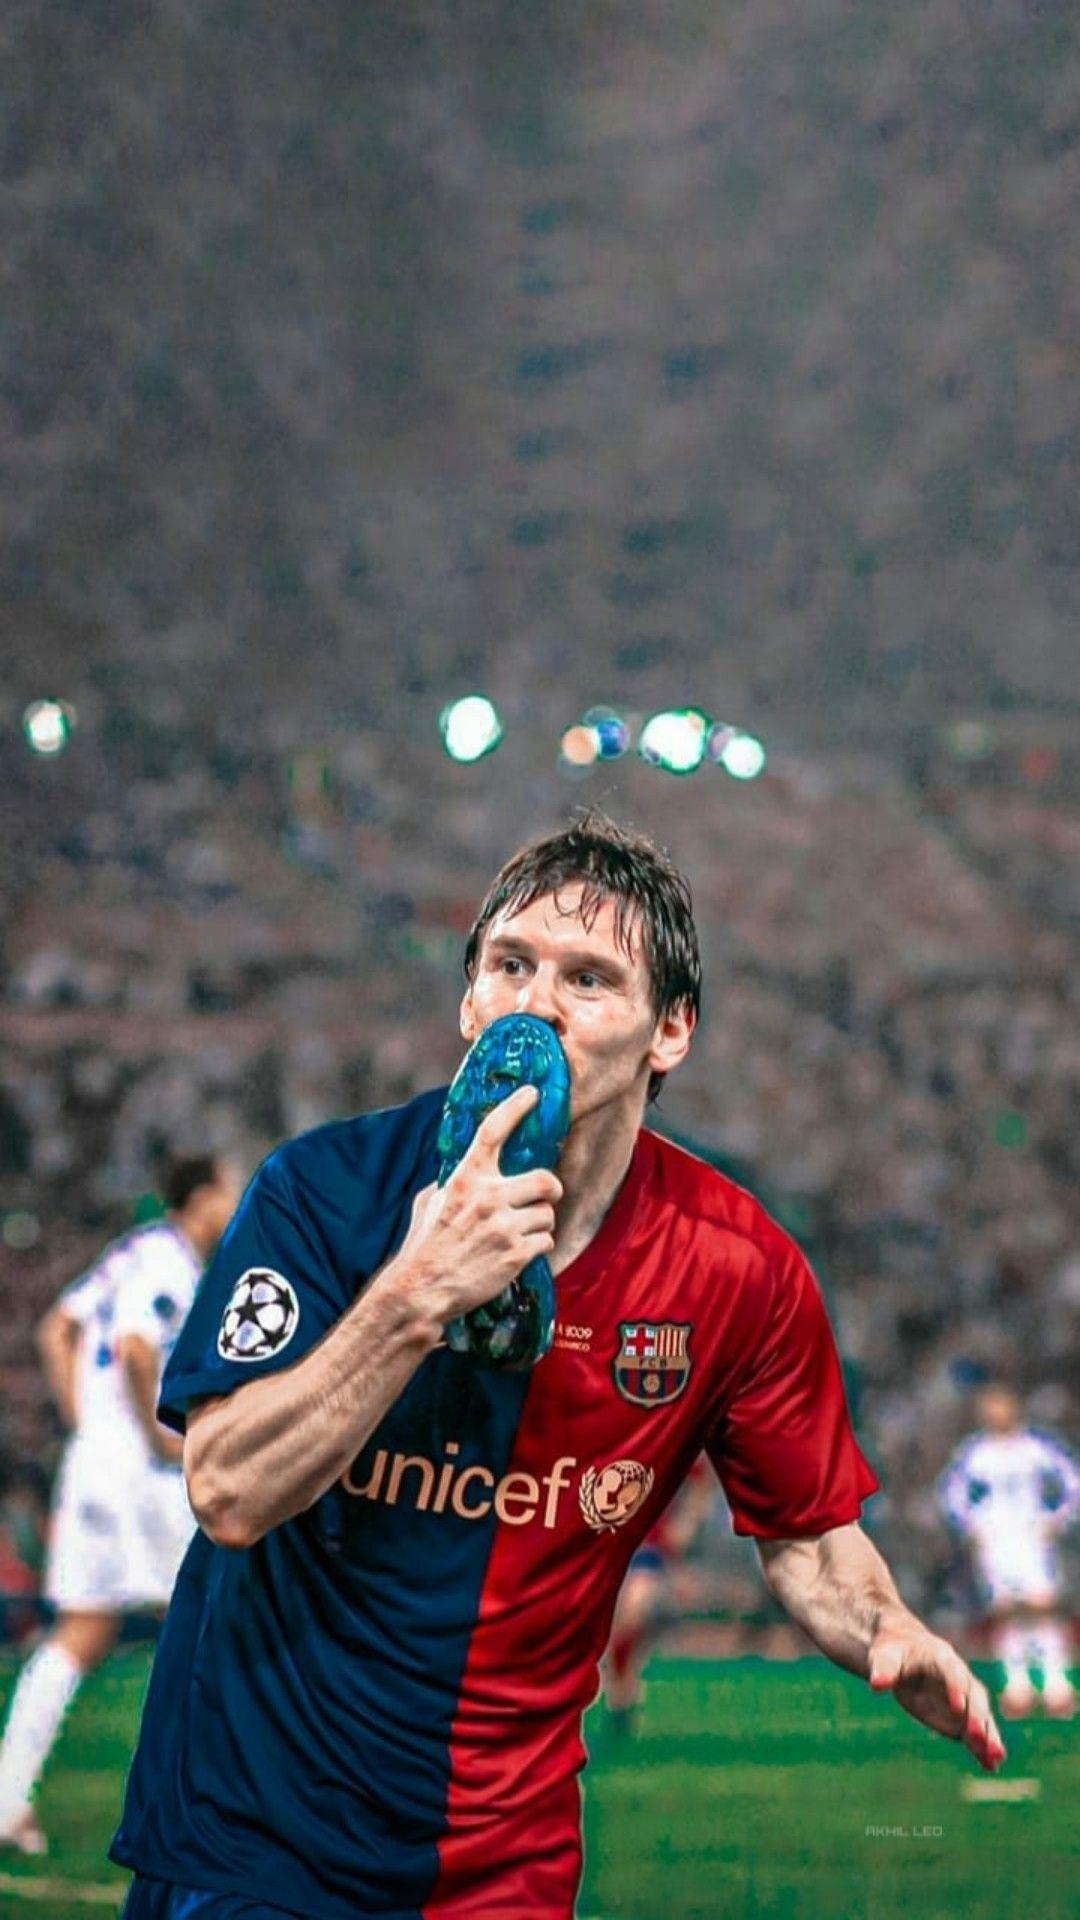 Bức tranh nền Messi 2009 Wallpaper sẽ đưa bạn trở lại những kỷ niệm đầy cảm xúc của ngôi sao bóng đá. Hãy cùng xem lại những khoảnh khắc lịch sử và tận hưởng niềm tự hào khi được là fan của Messi.